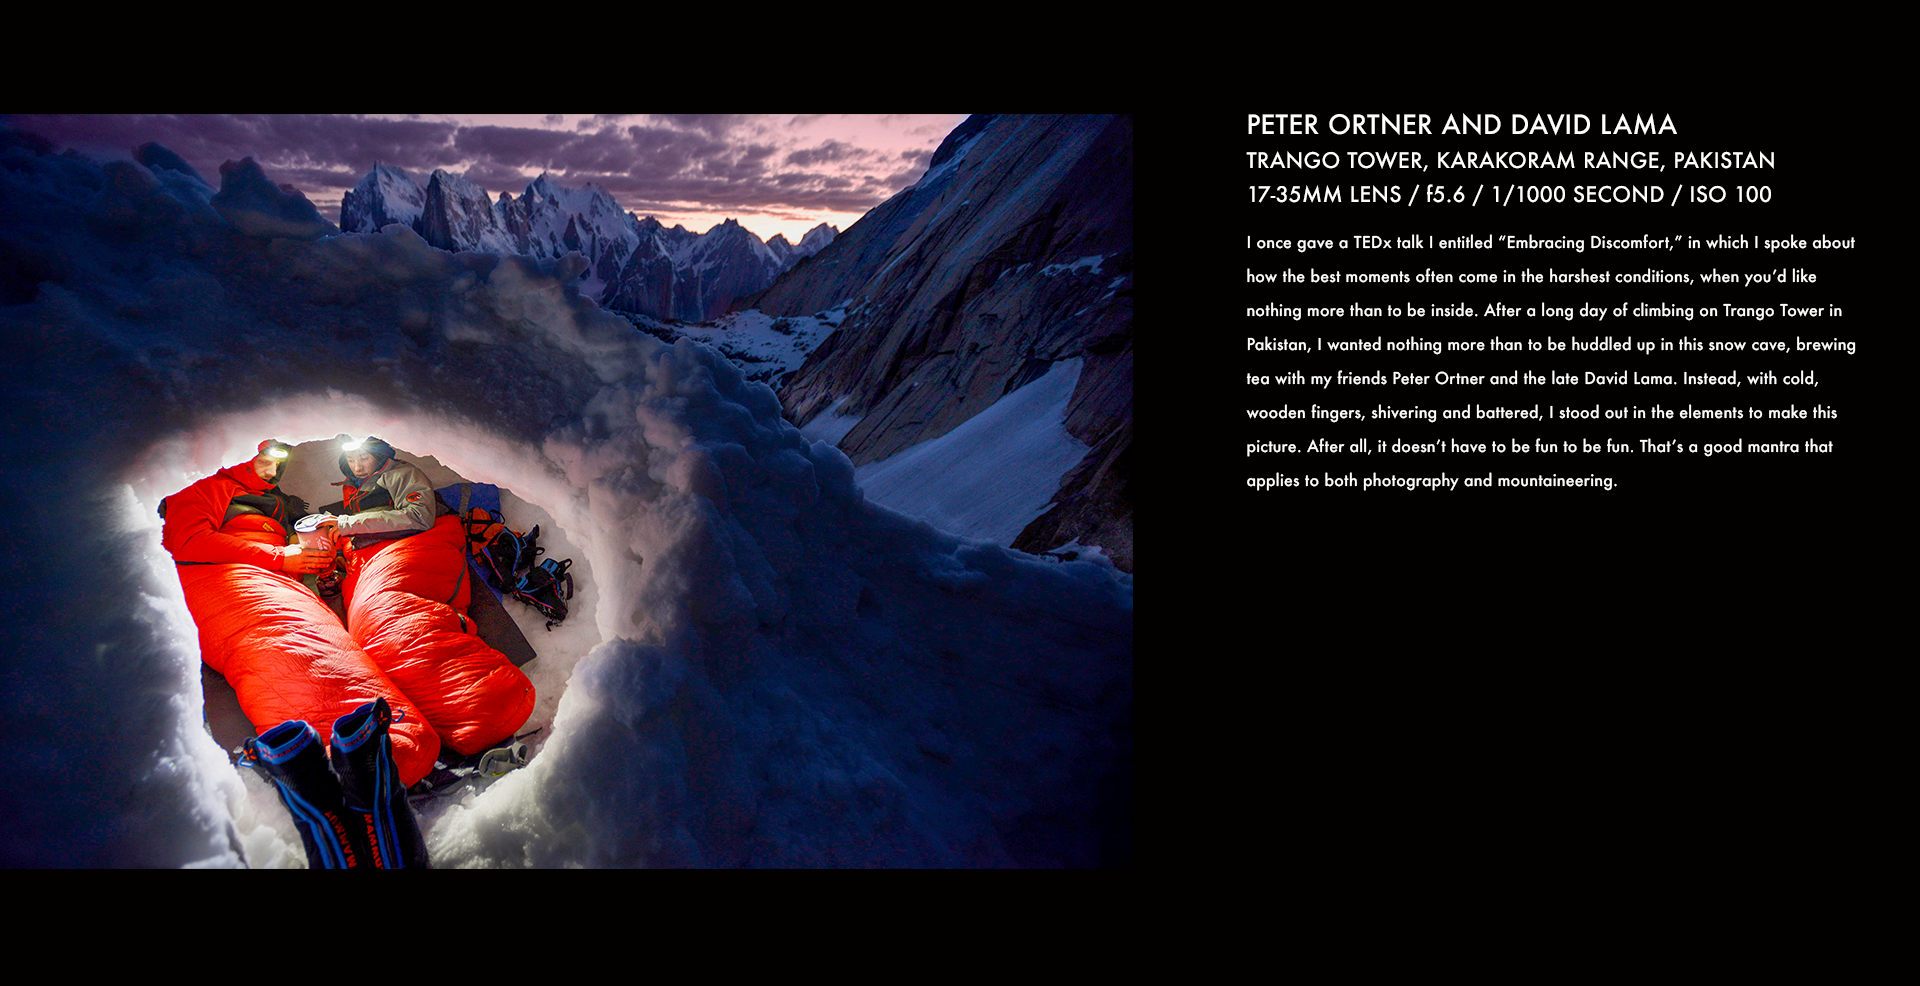  David Lama, Peter Ortner, snow cave, snow, climbing, rock climbing, mountain climber, corey rich, stories behind the images 